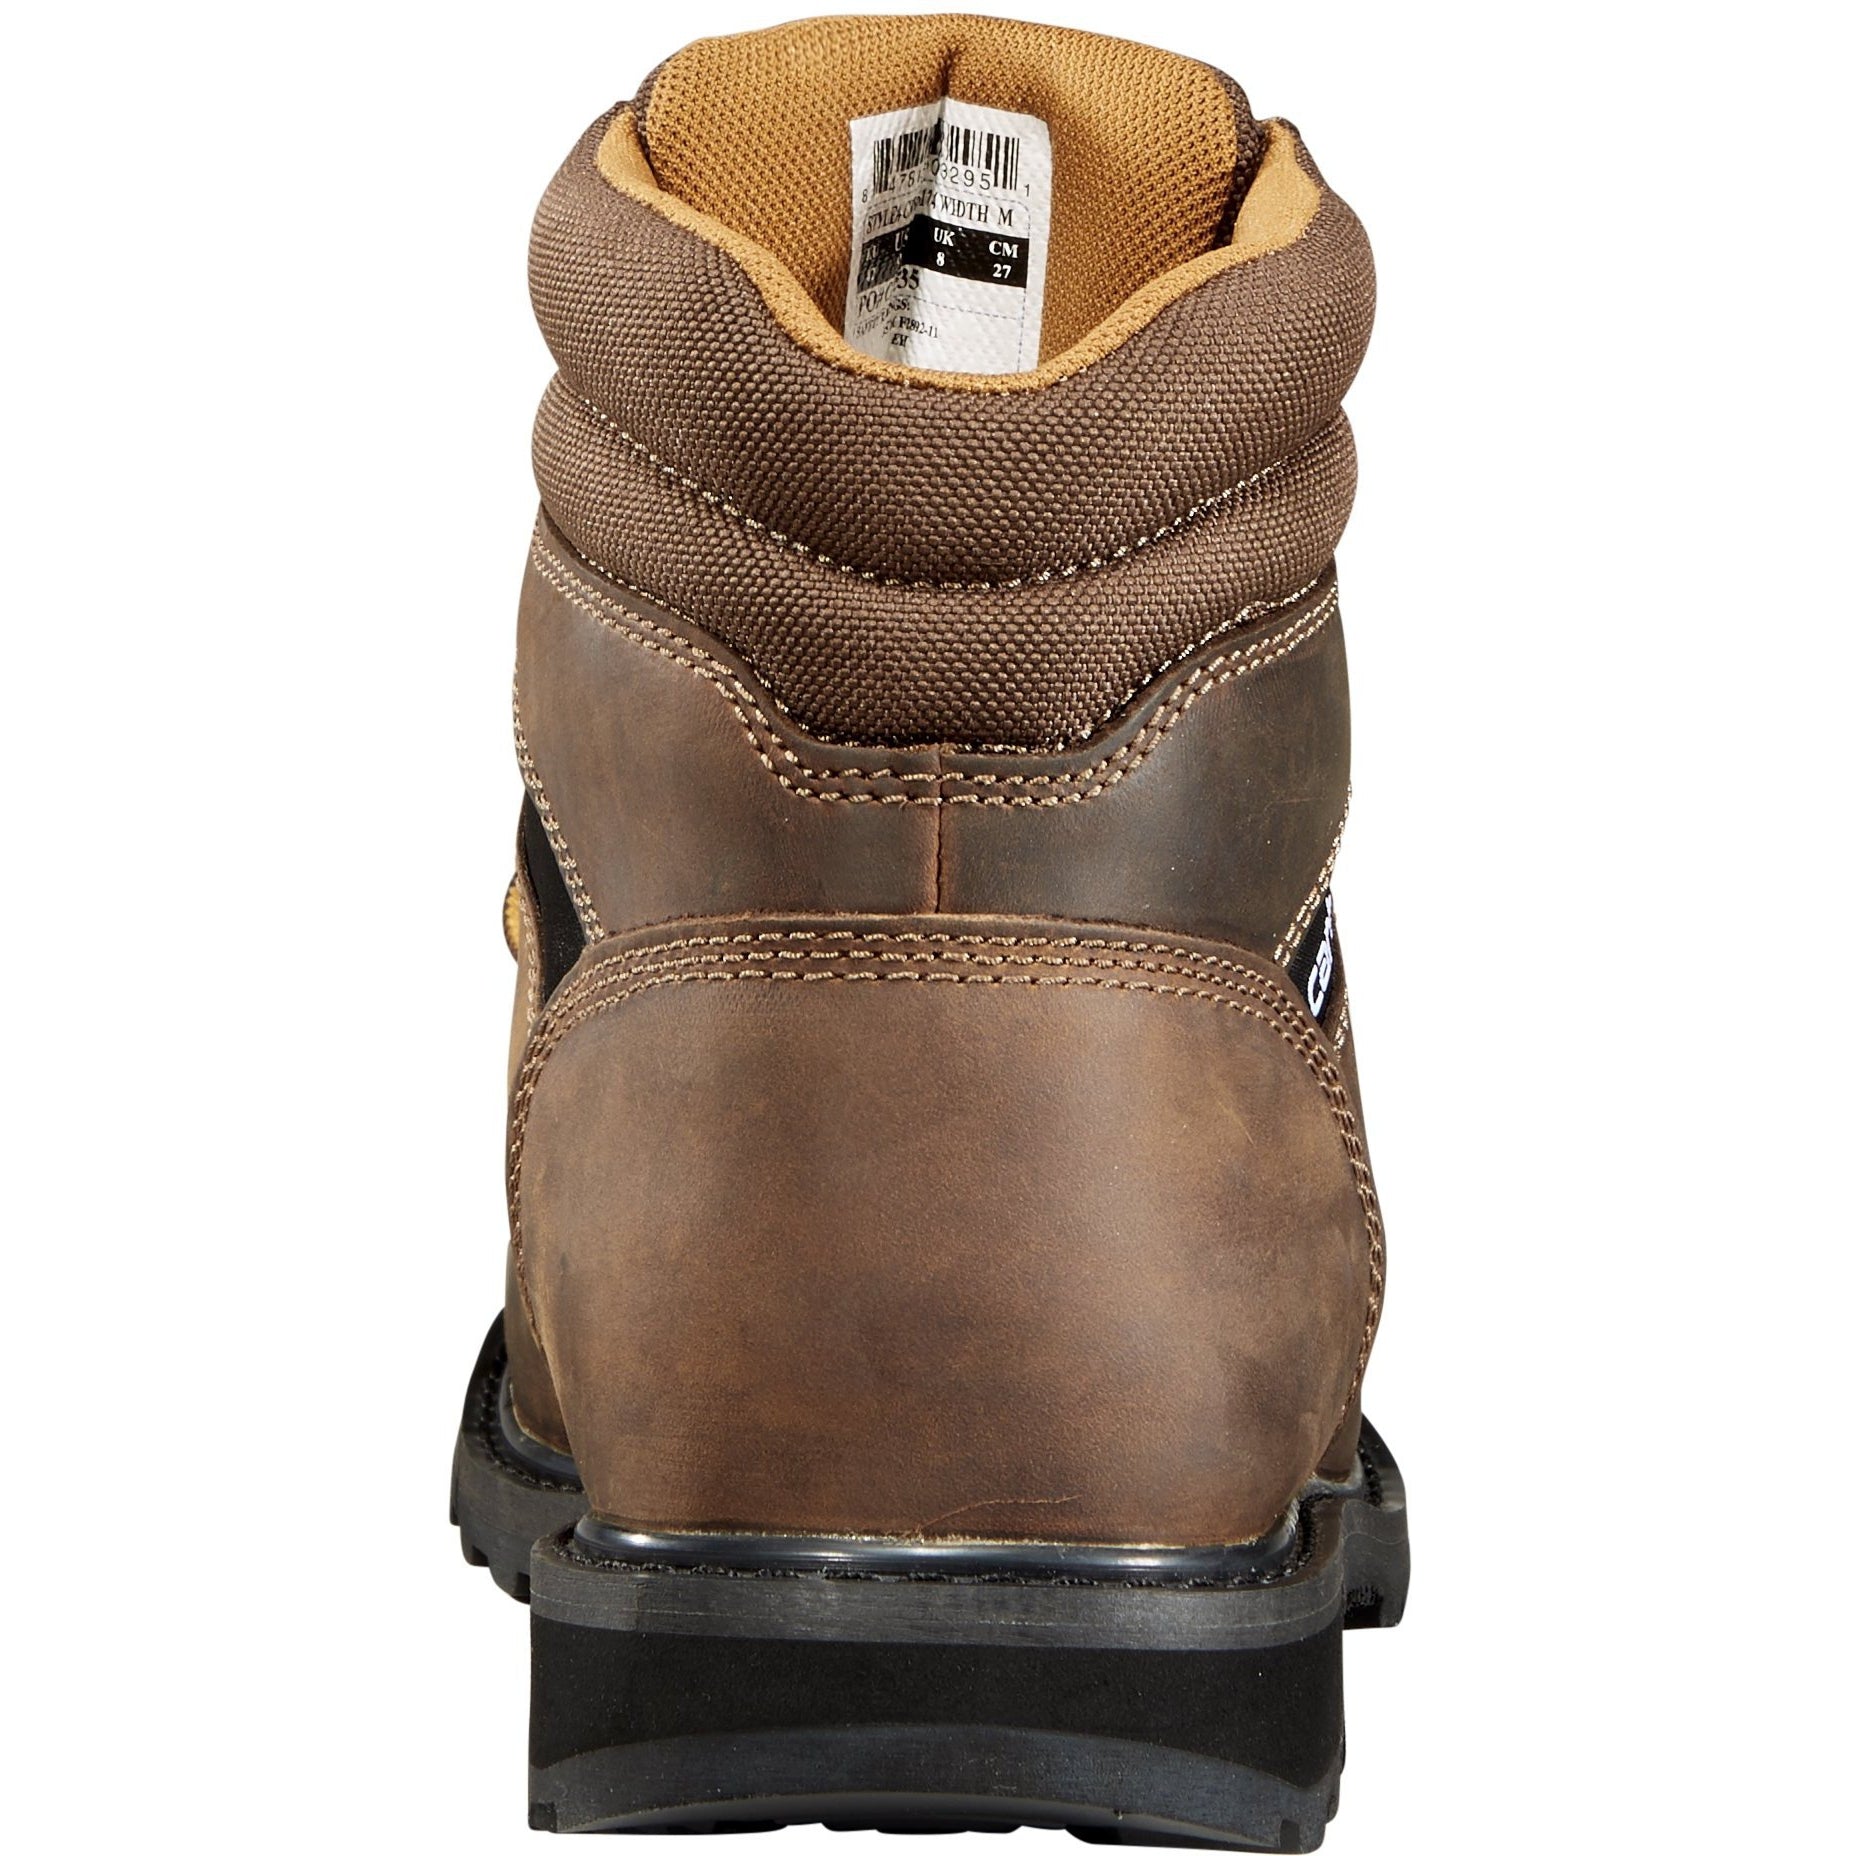 Carhartt Men's 6" Soft Toe Work Boot - Brown - CMW6174  - Overlook Boots